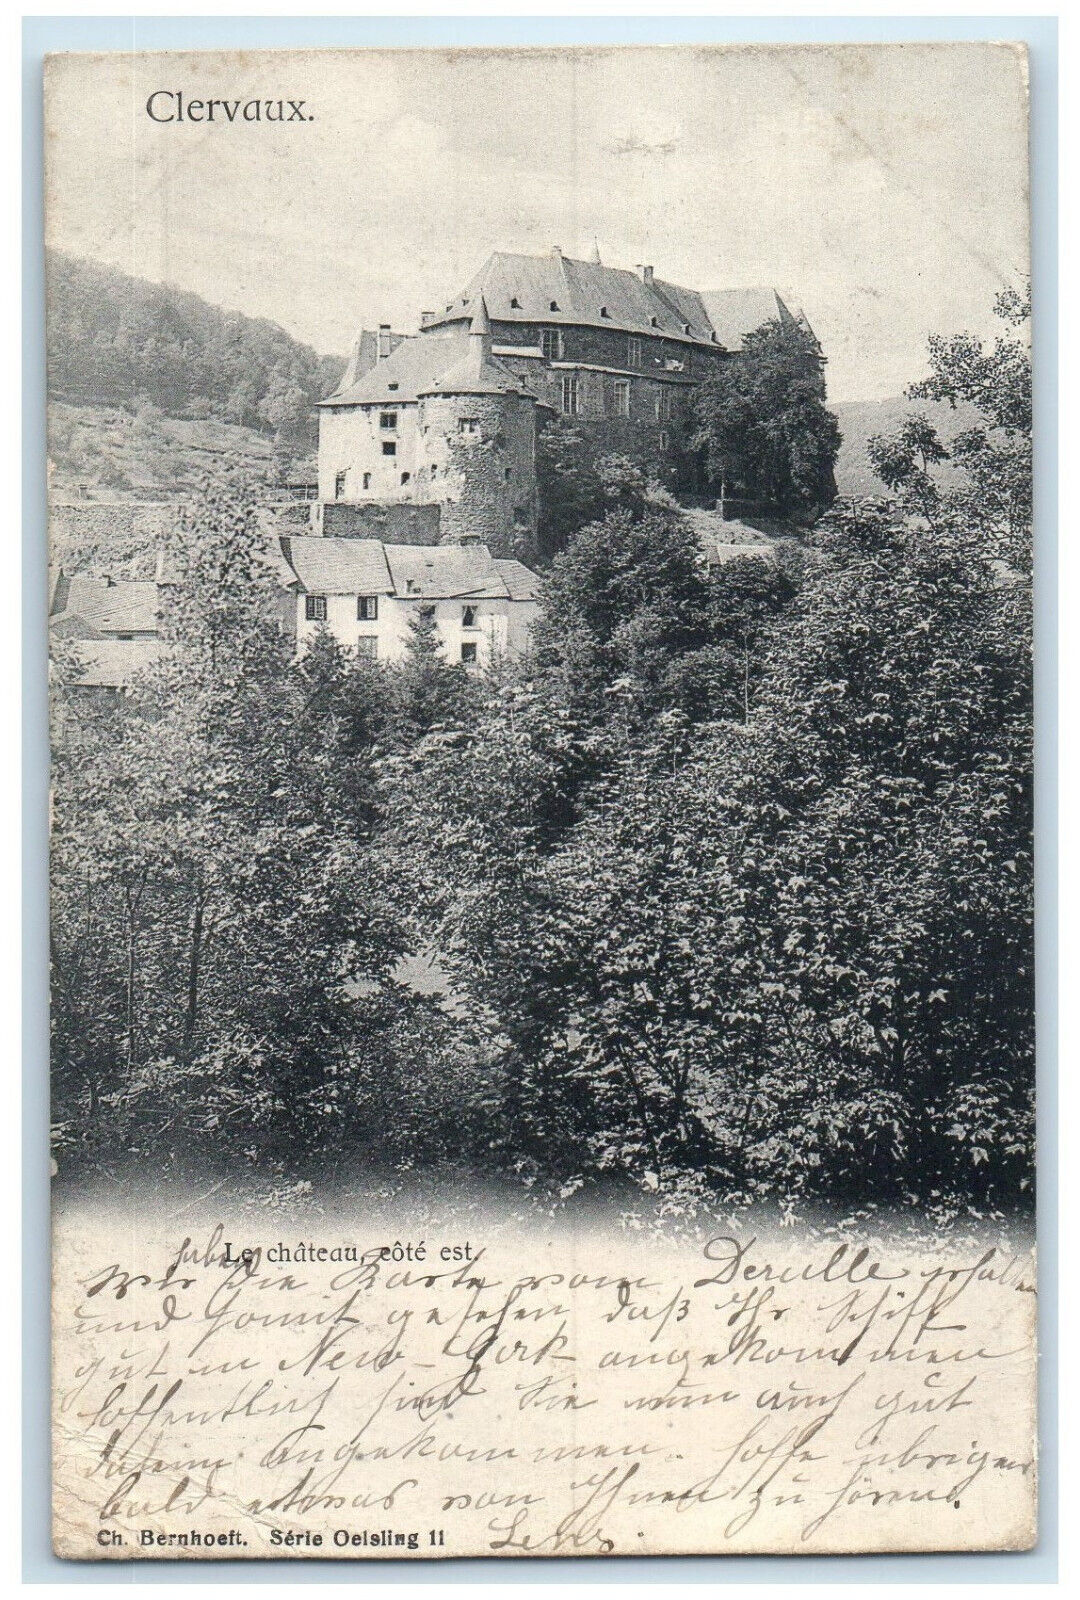 1903 Le Chateau Cote Est Clervaux Luxembourg Antique Posted Postcard